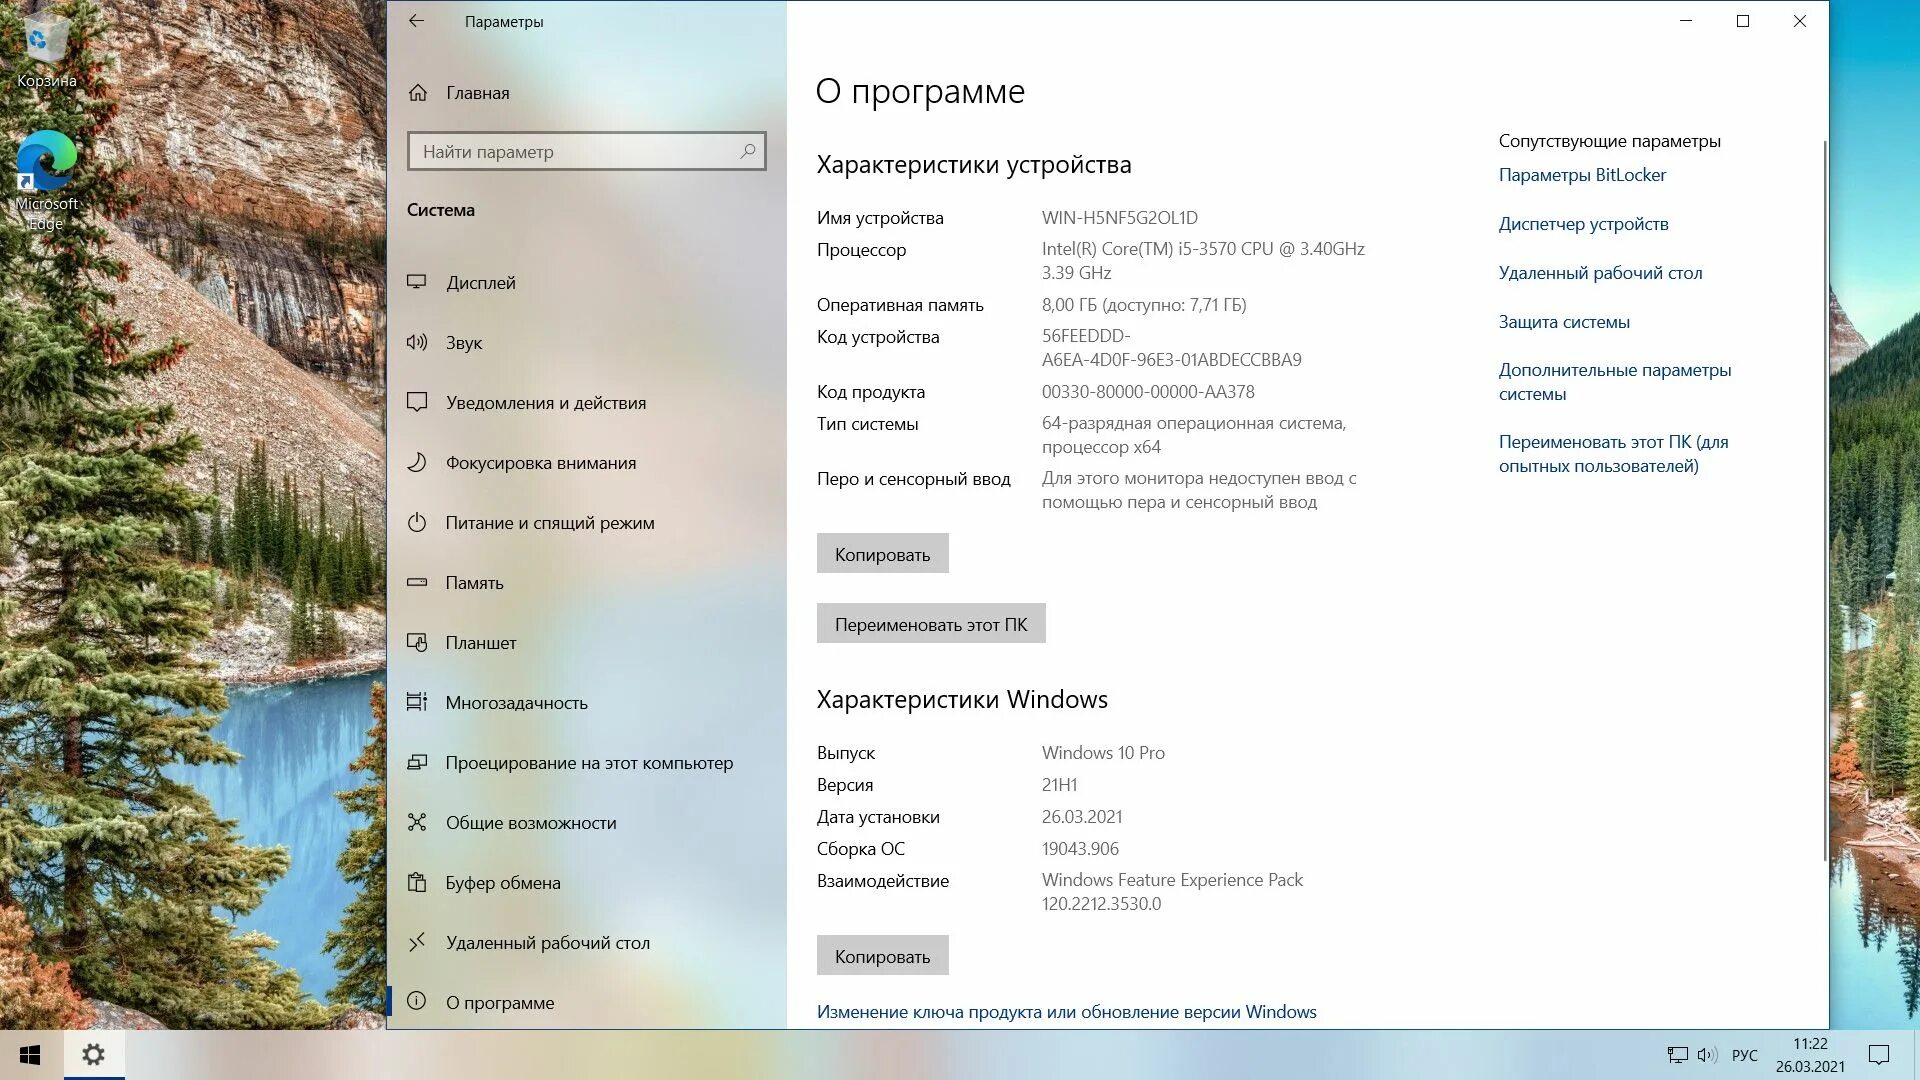 Версия 10 21. Виндовс 10 Pro h21. Виндовс 10 21h1. 21h1 Windows 10 что нового. Скрин обновления виндовс 10.